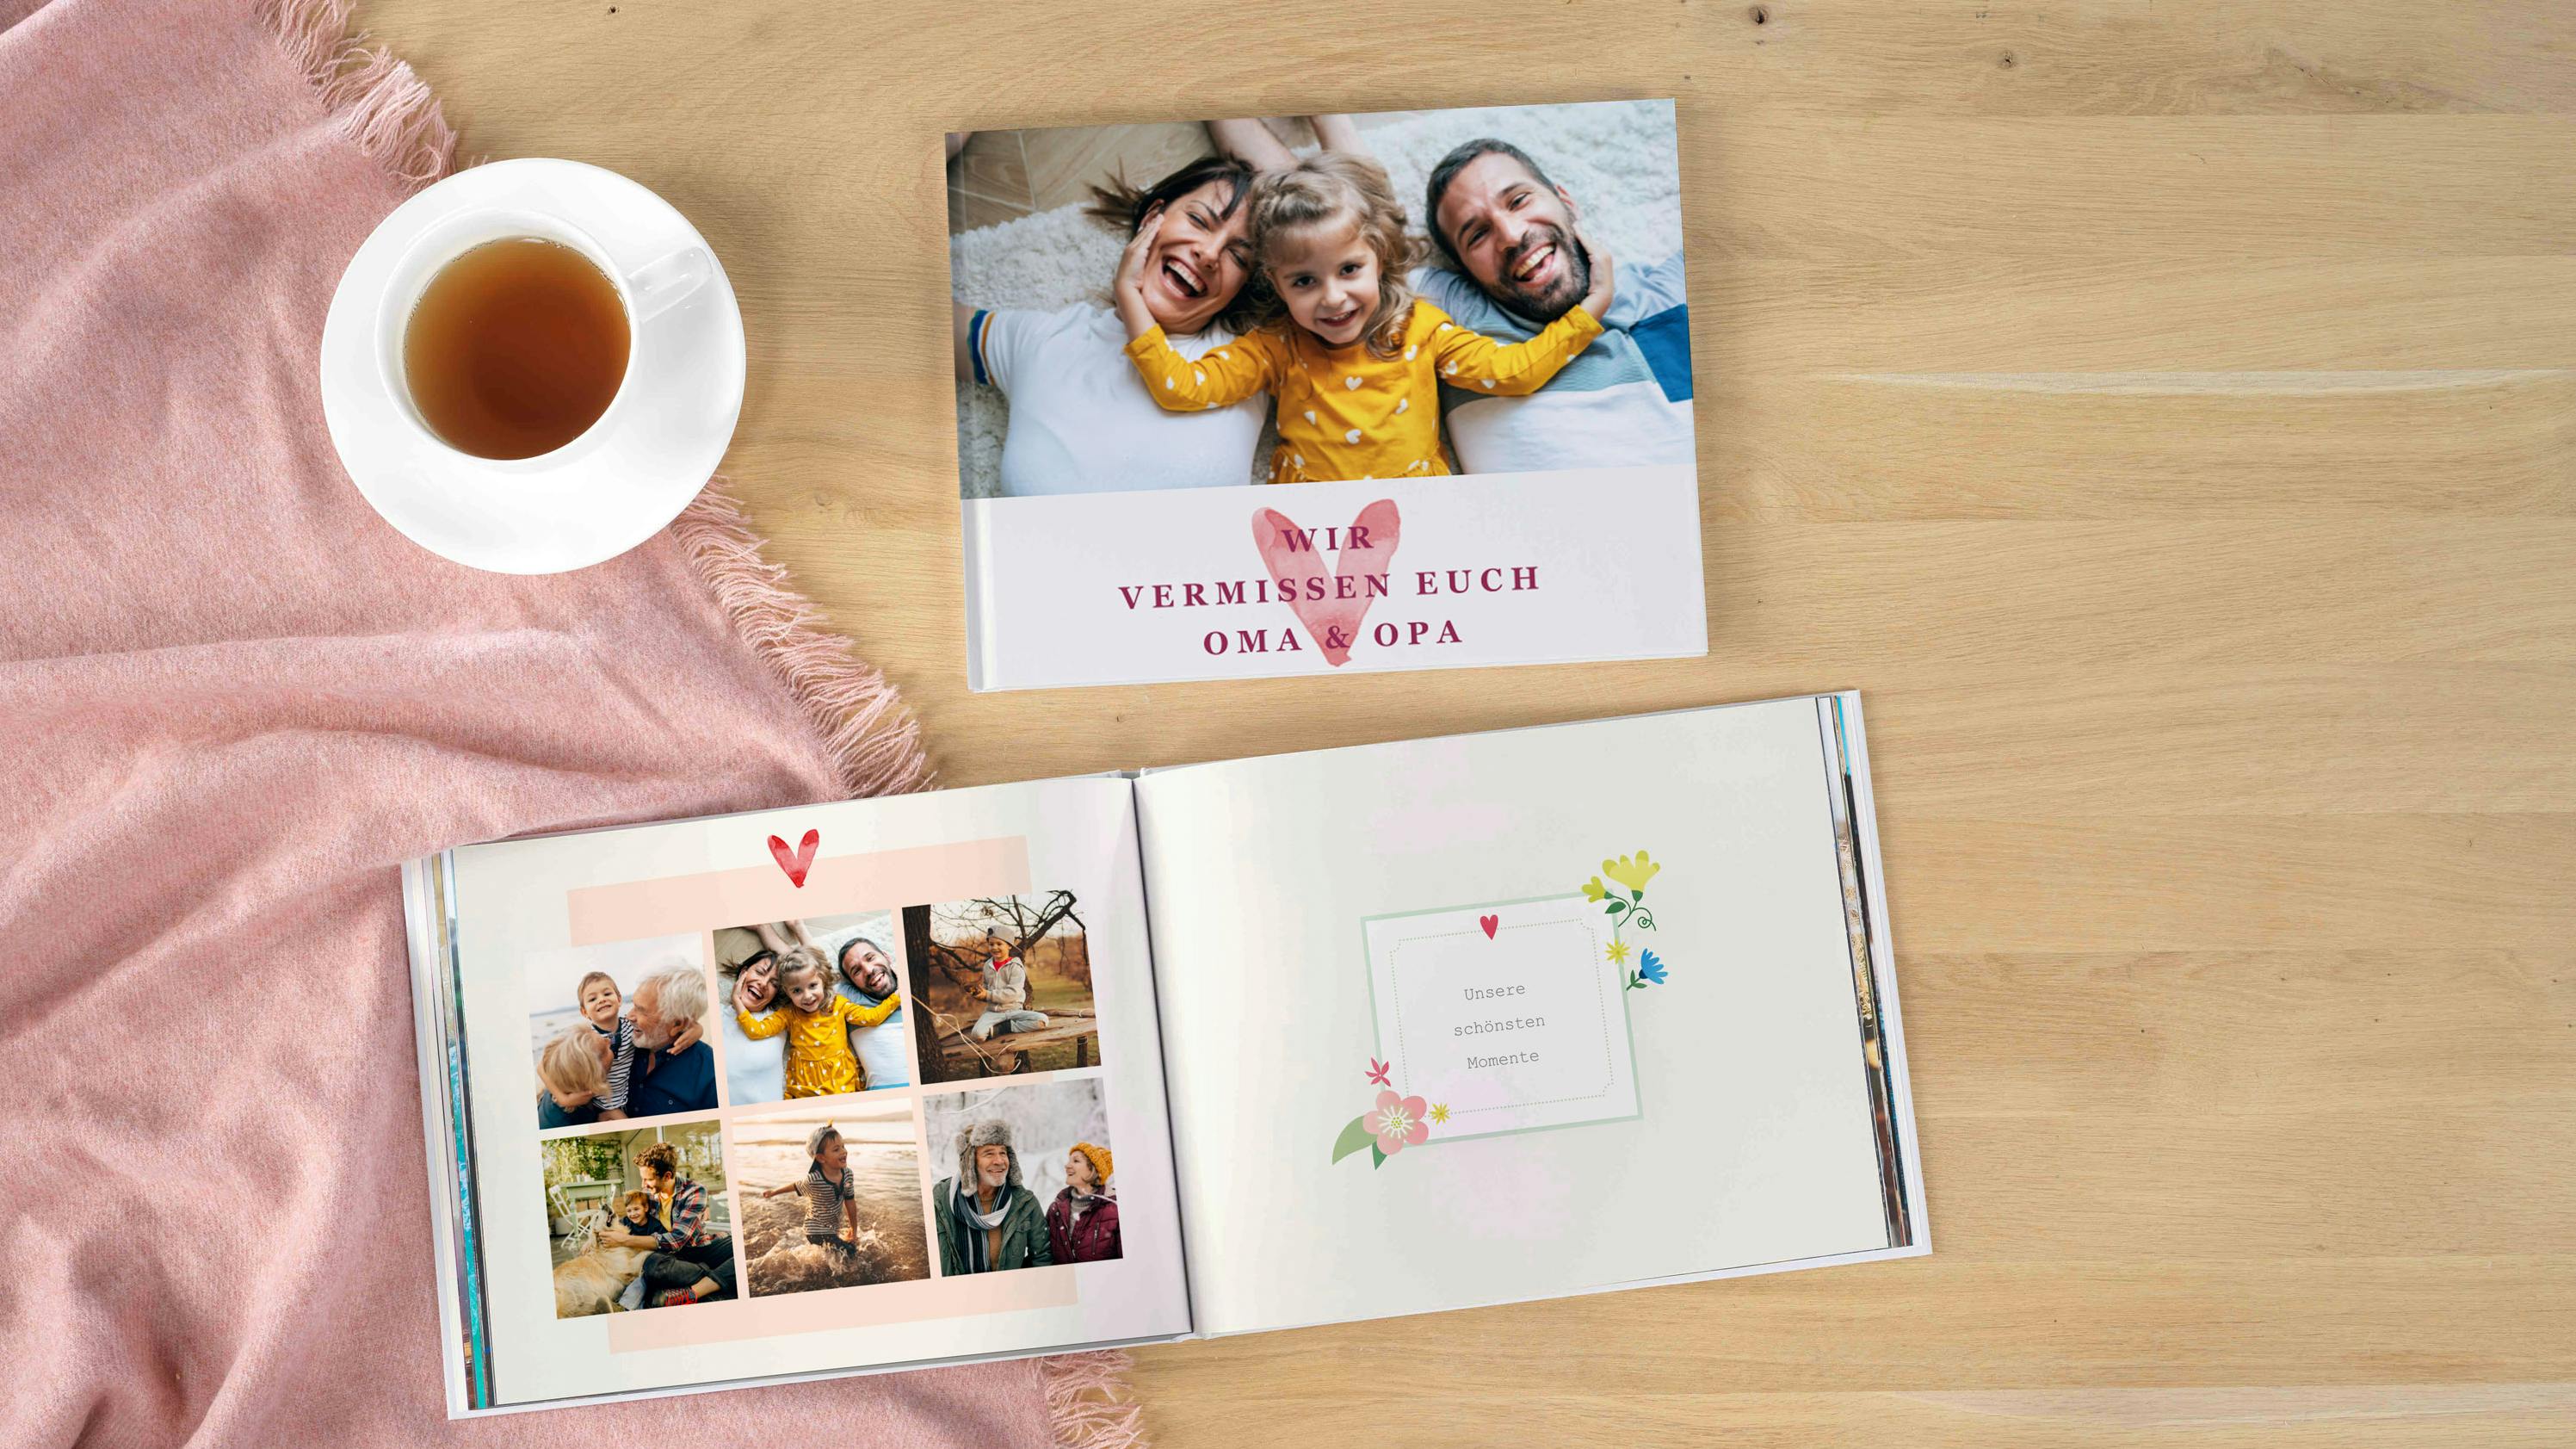 Fotobucheinband und aufgeklapptes Fotobuch mit Familienmotiven der Großeltern und Enkel auf einem Holztisch liegend